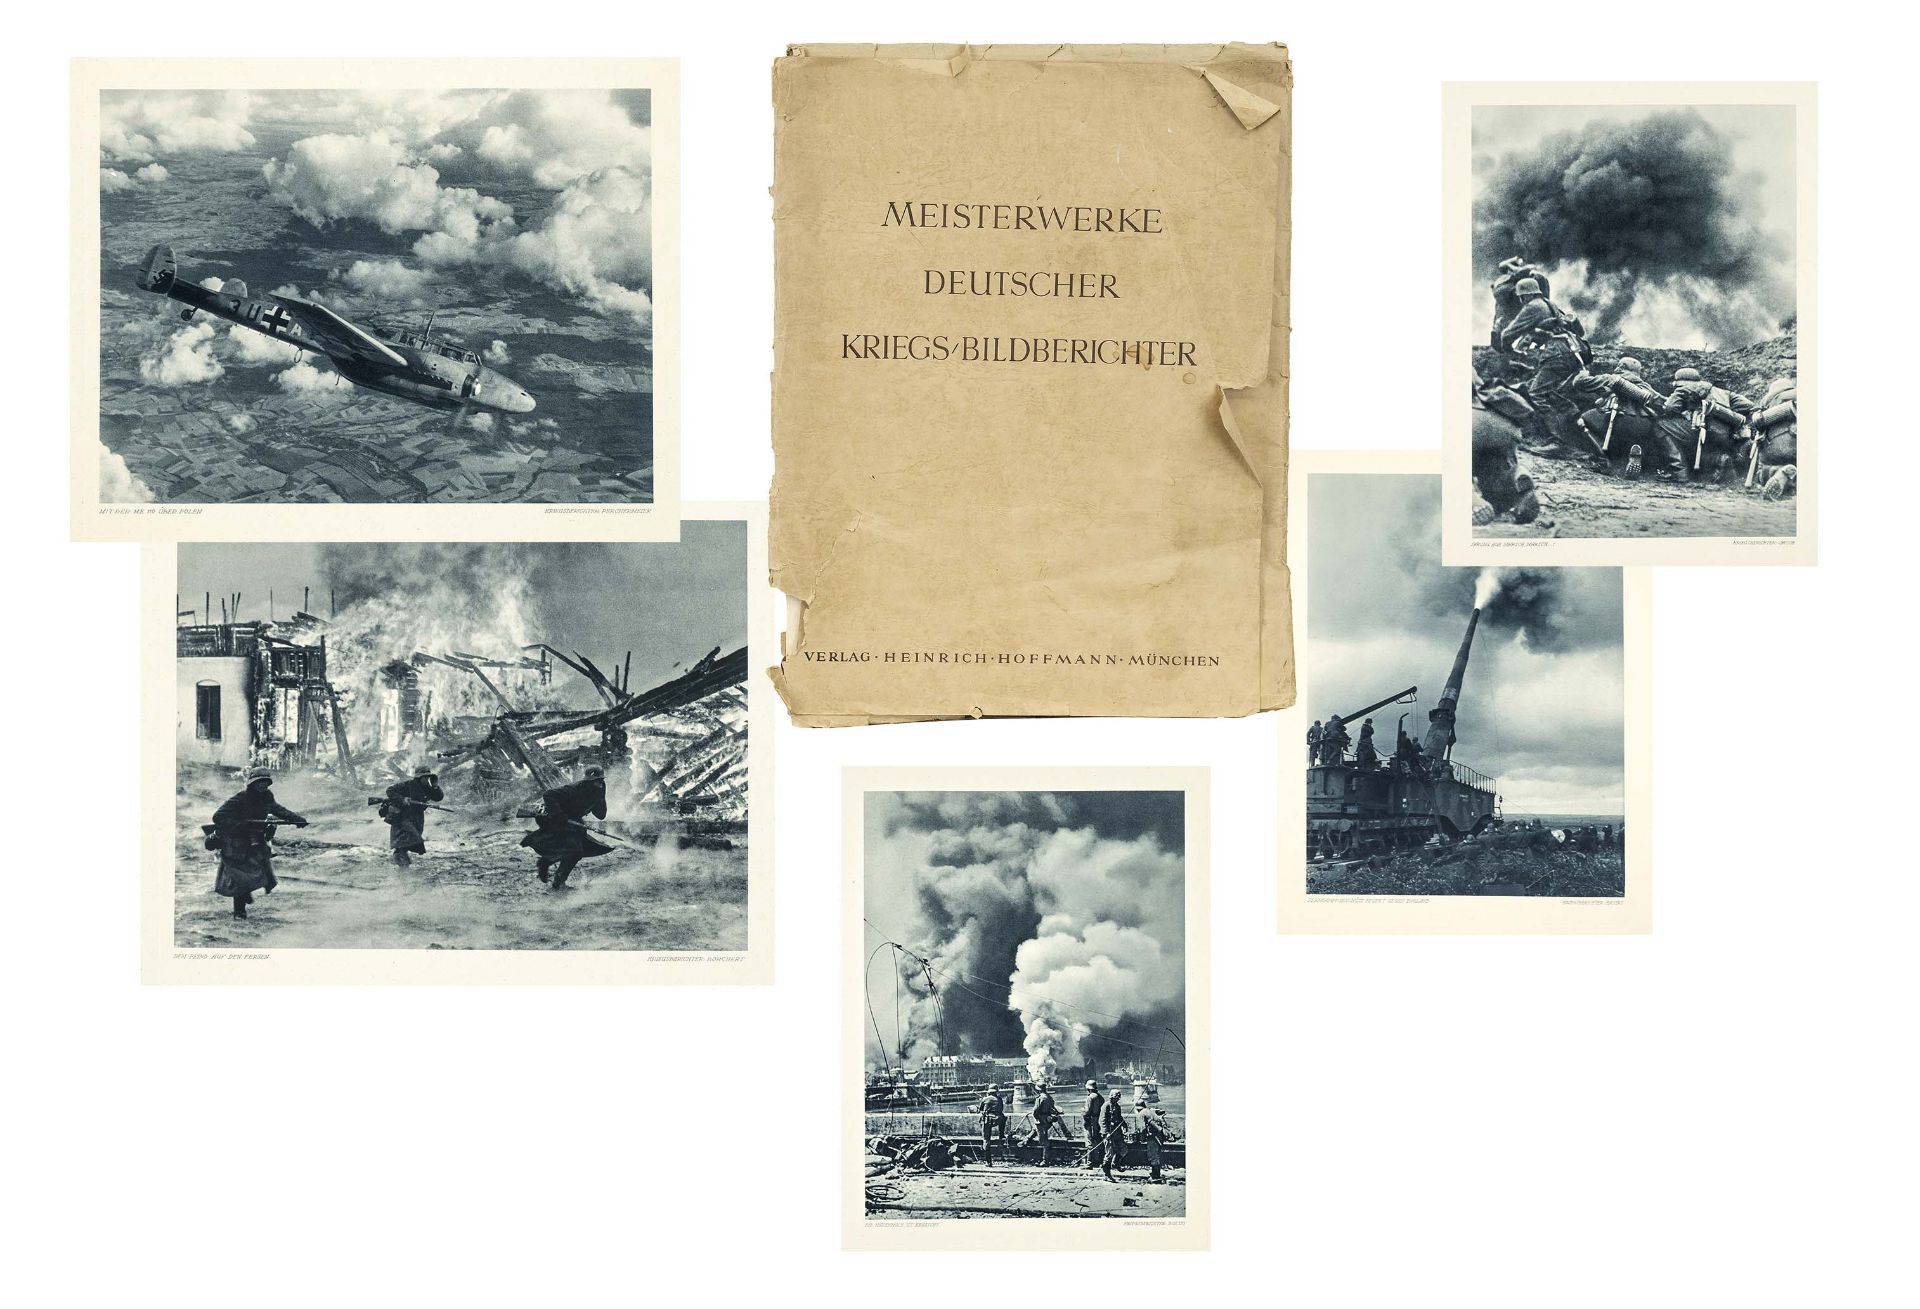 Picture folder ''Meisterwerke Deutscher Kriegsbildberichter'', Germany (Munich) before 1945. 15